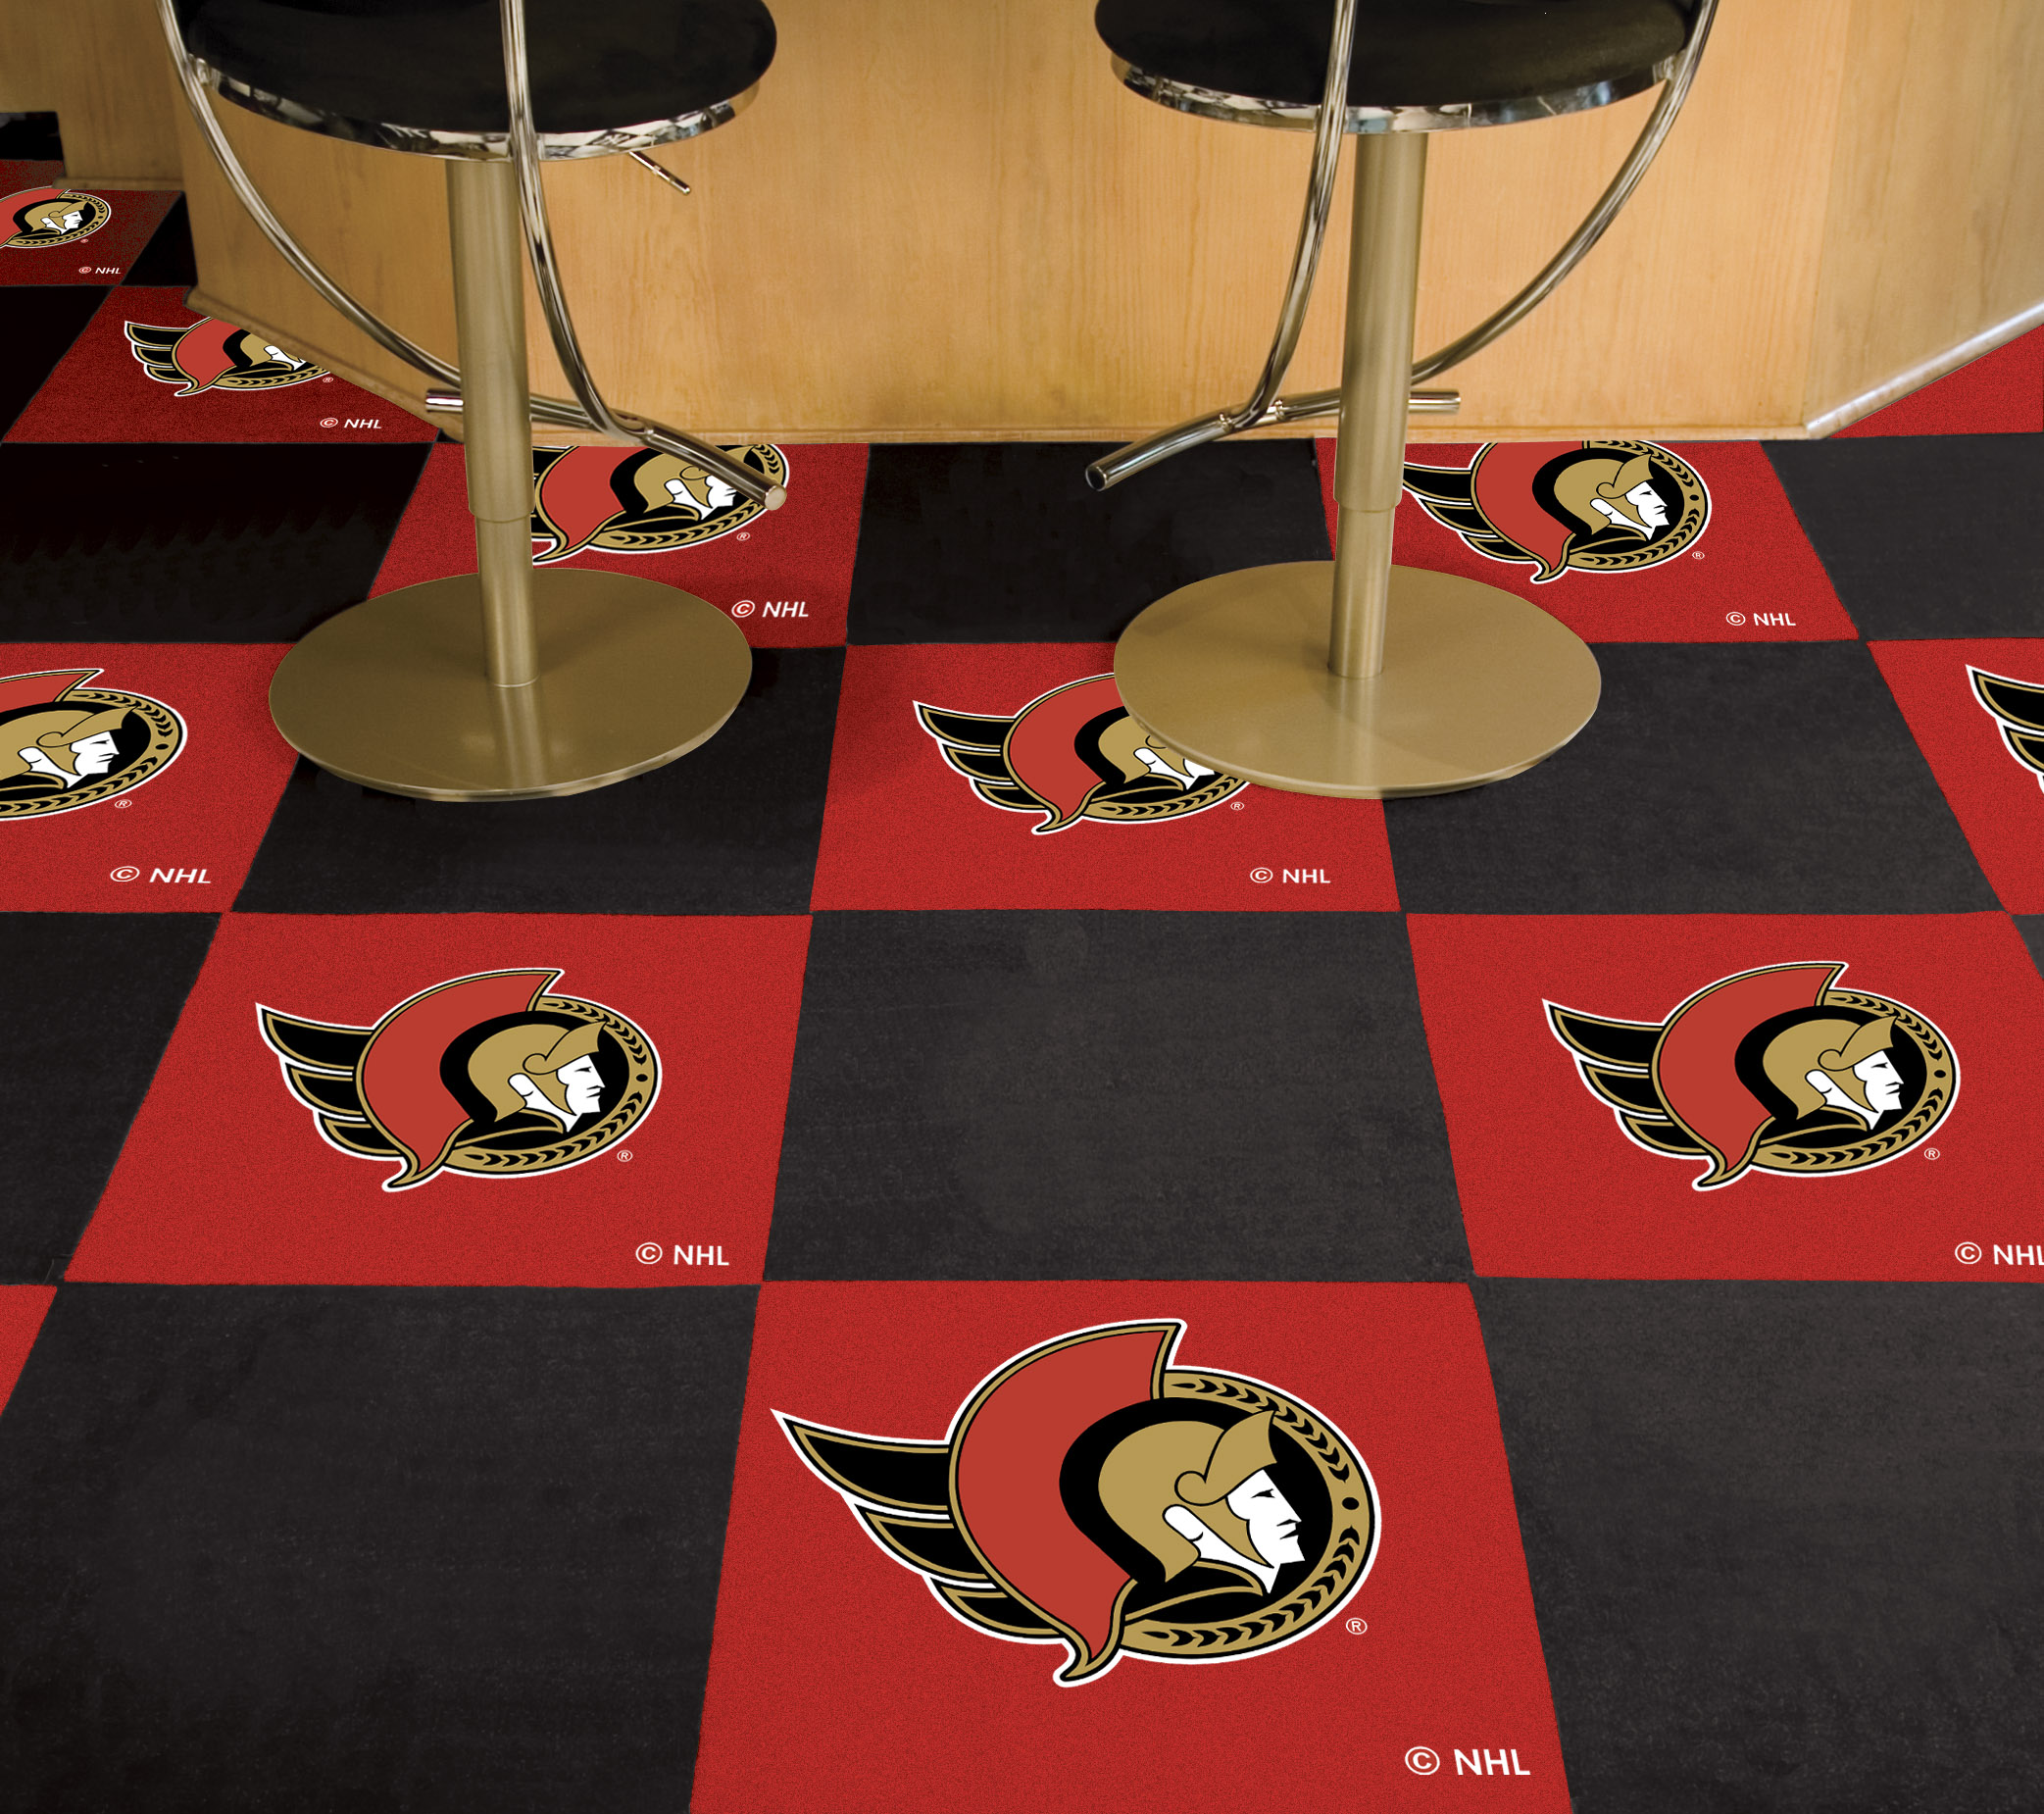 Ottawa Senators Team Carpet Tiles - 45 sq ft